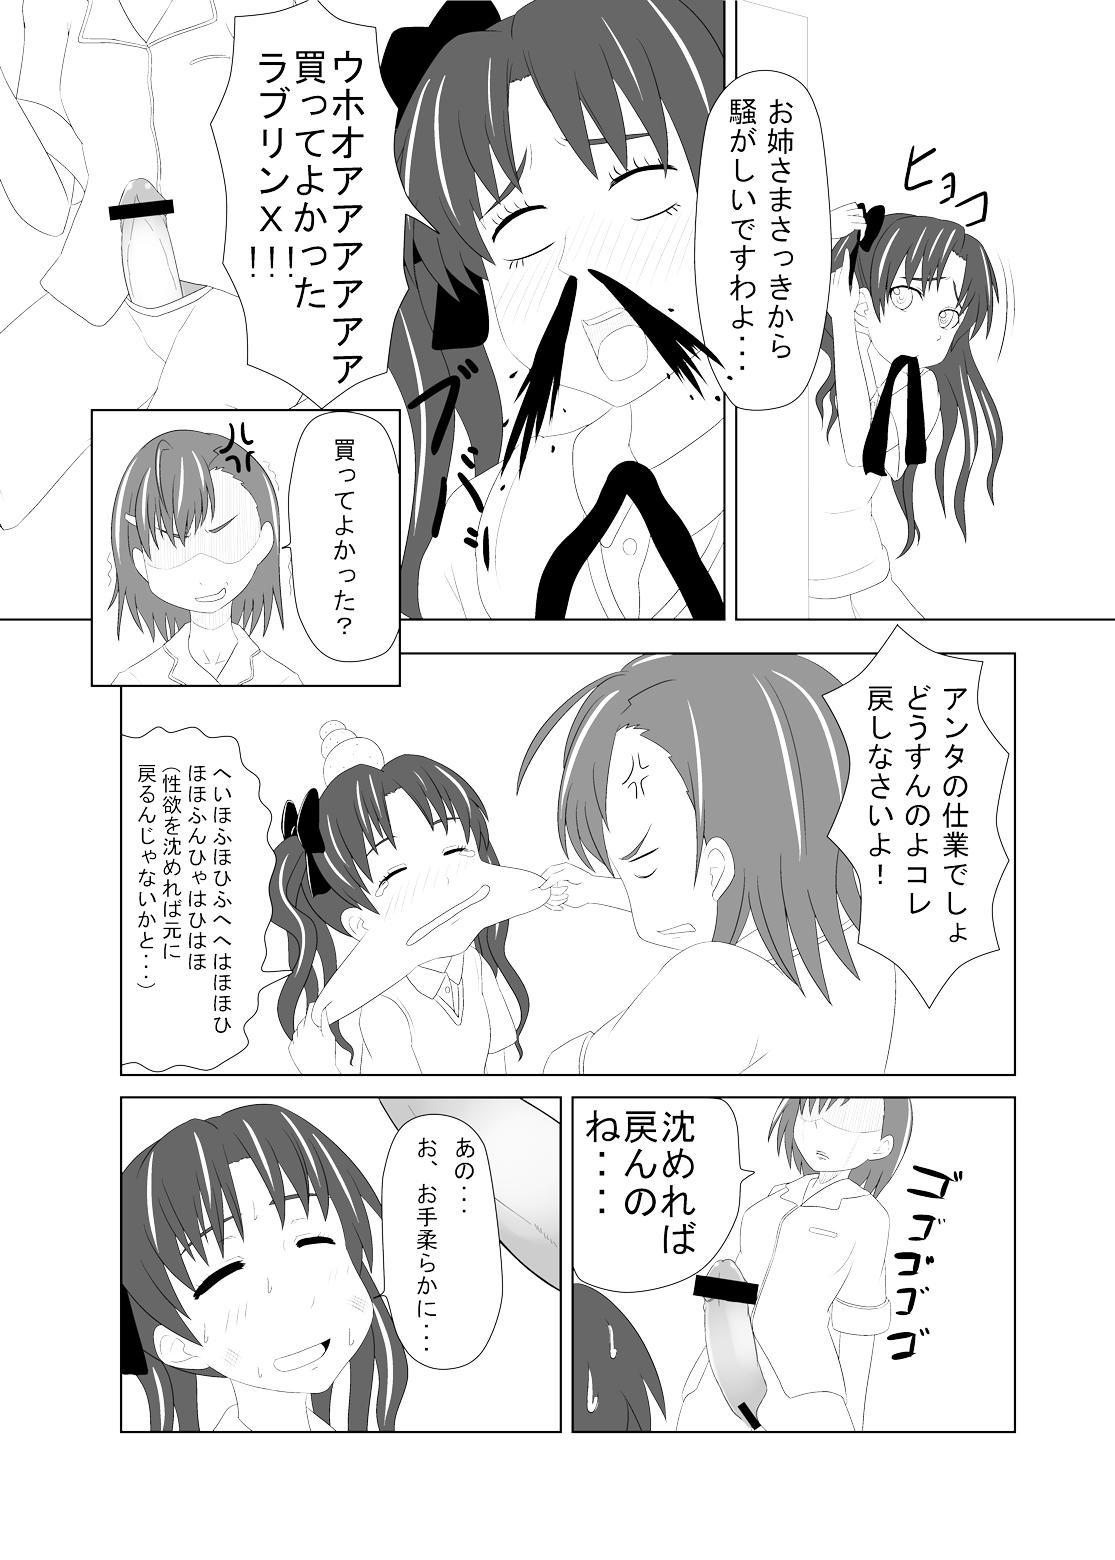 Teentube Toaru Fuuki iin no Manabi Yori - Toaru kagaku no railgun Gay Shorthair - Page 8